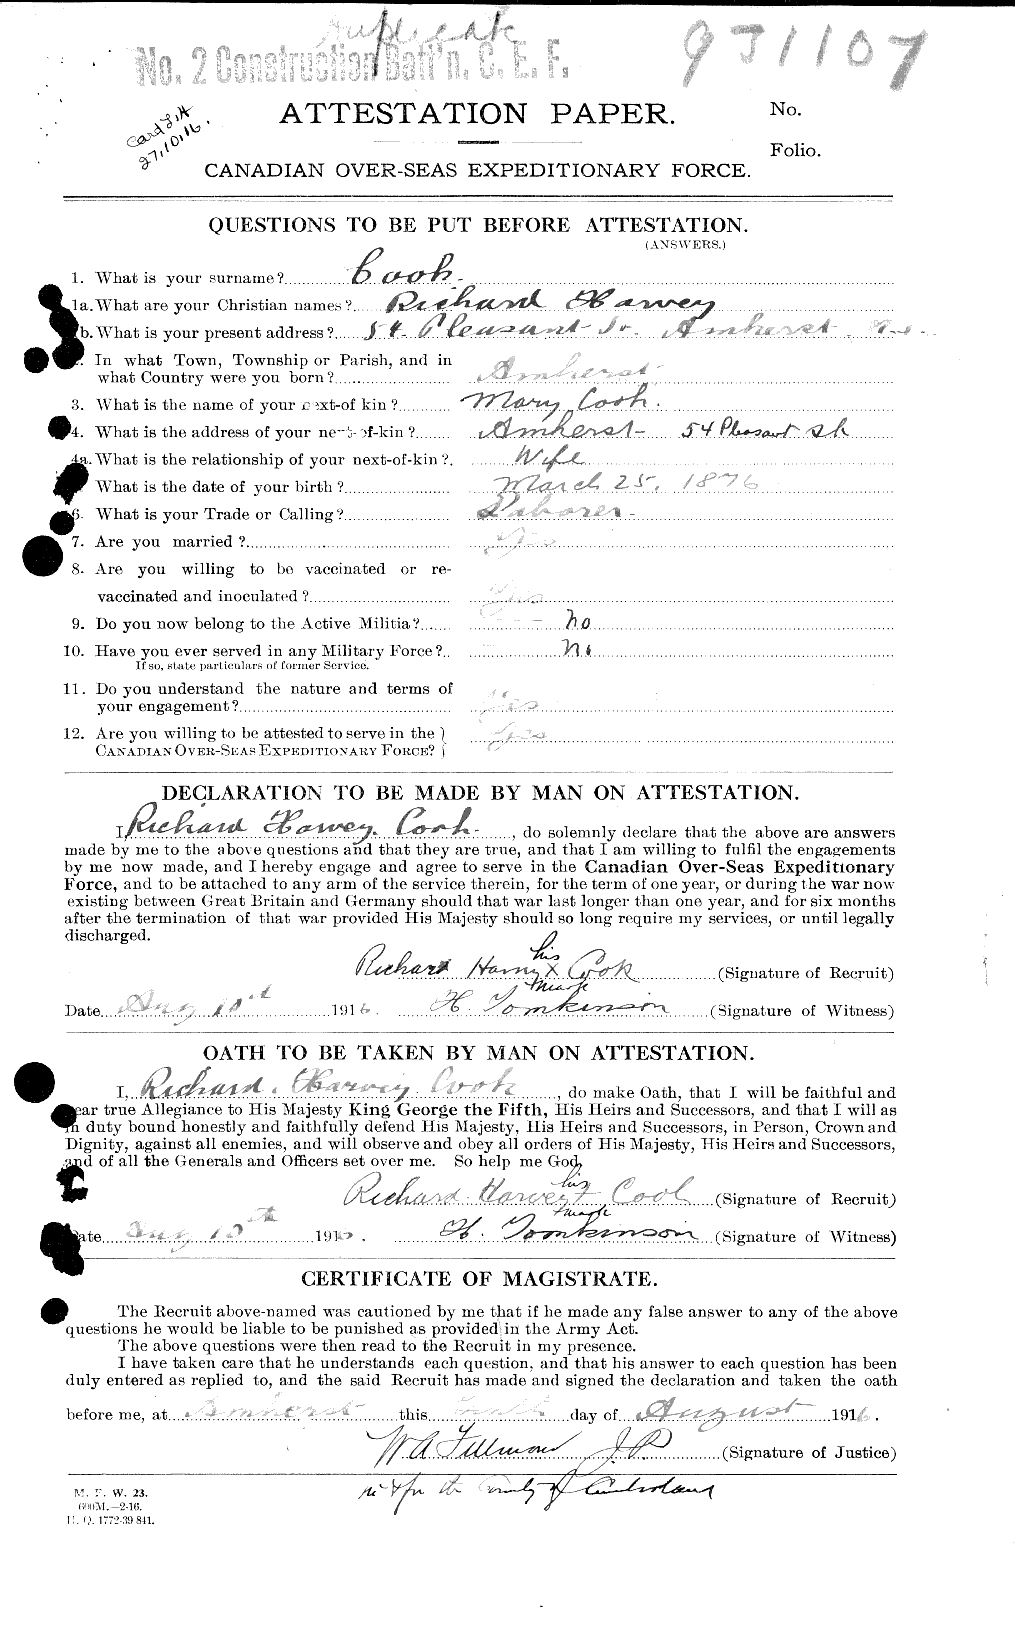 Dossiers du Personnel de la Première Guerre mondiale - CEC 047241a